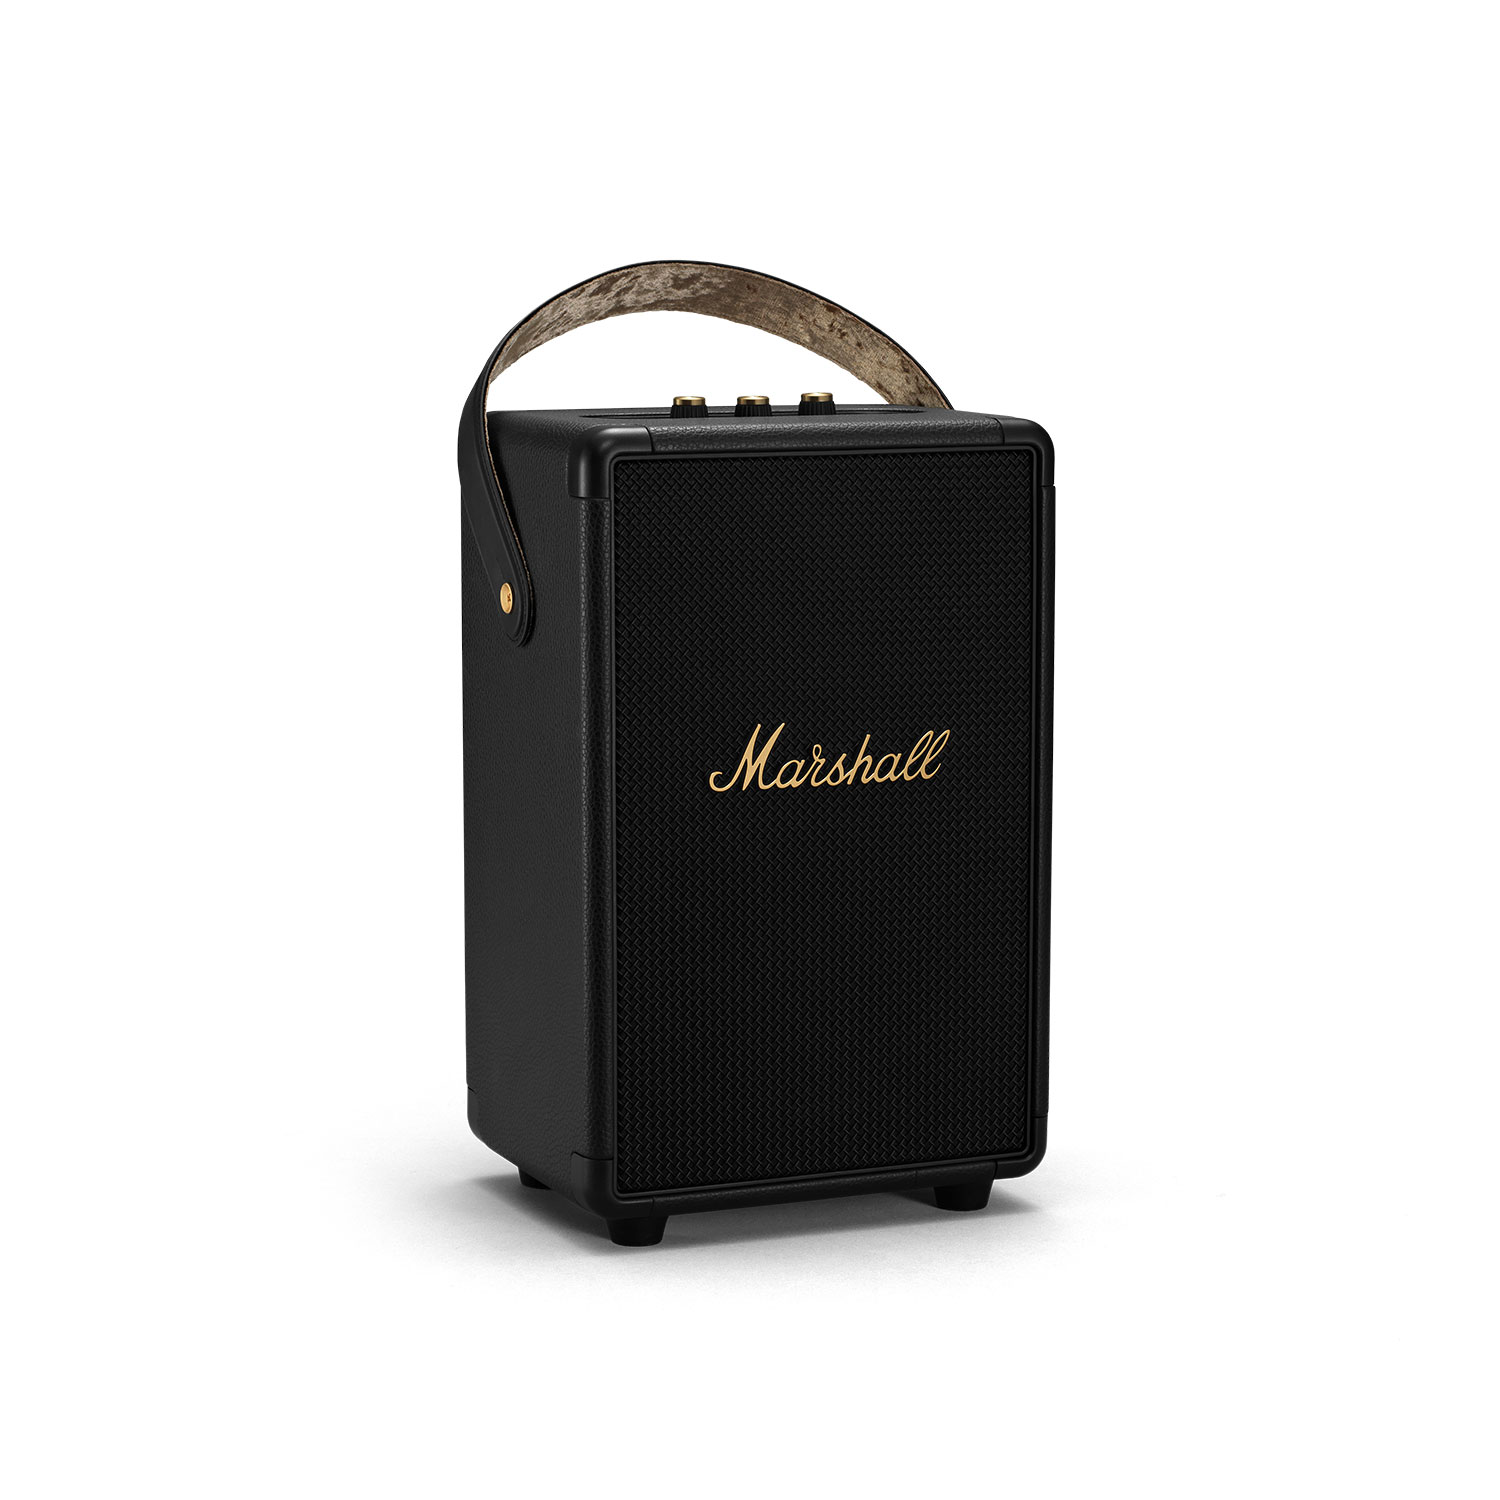 Marshall Tufton Trådløs høyttaler med batteri - Høyttalere - Trådløs/Bluetooth høyttaler